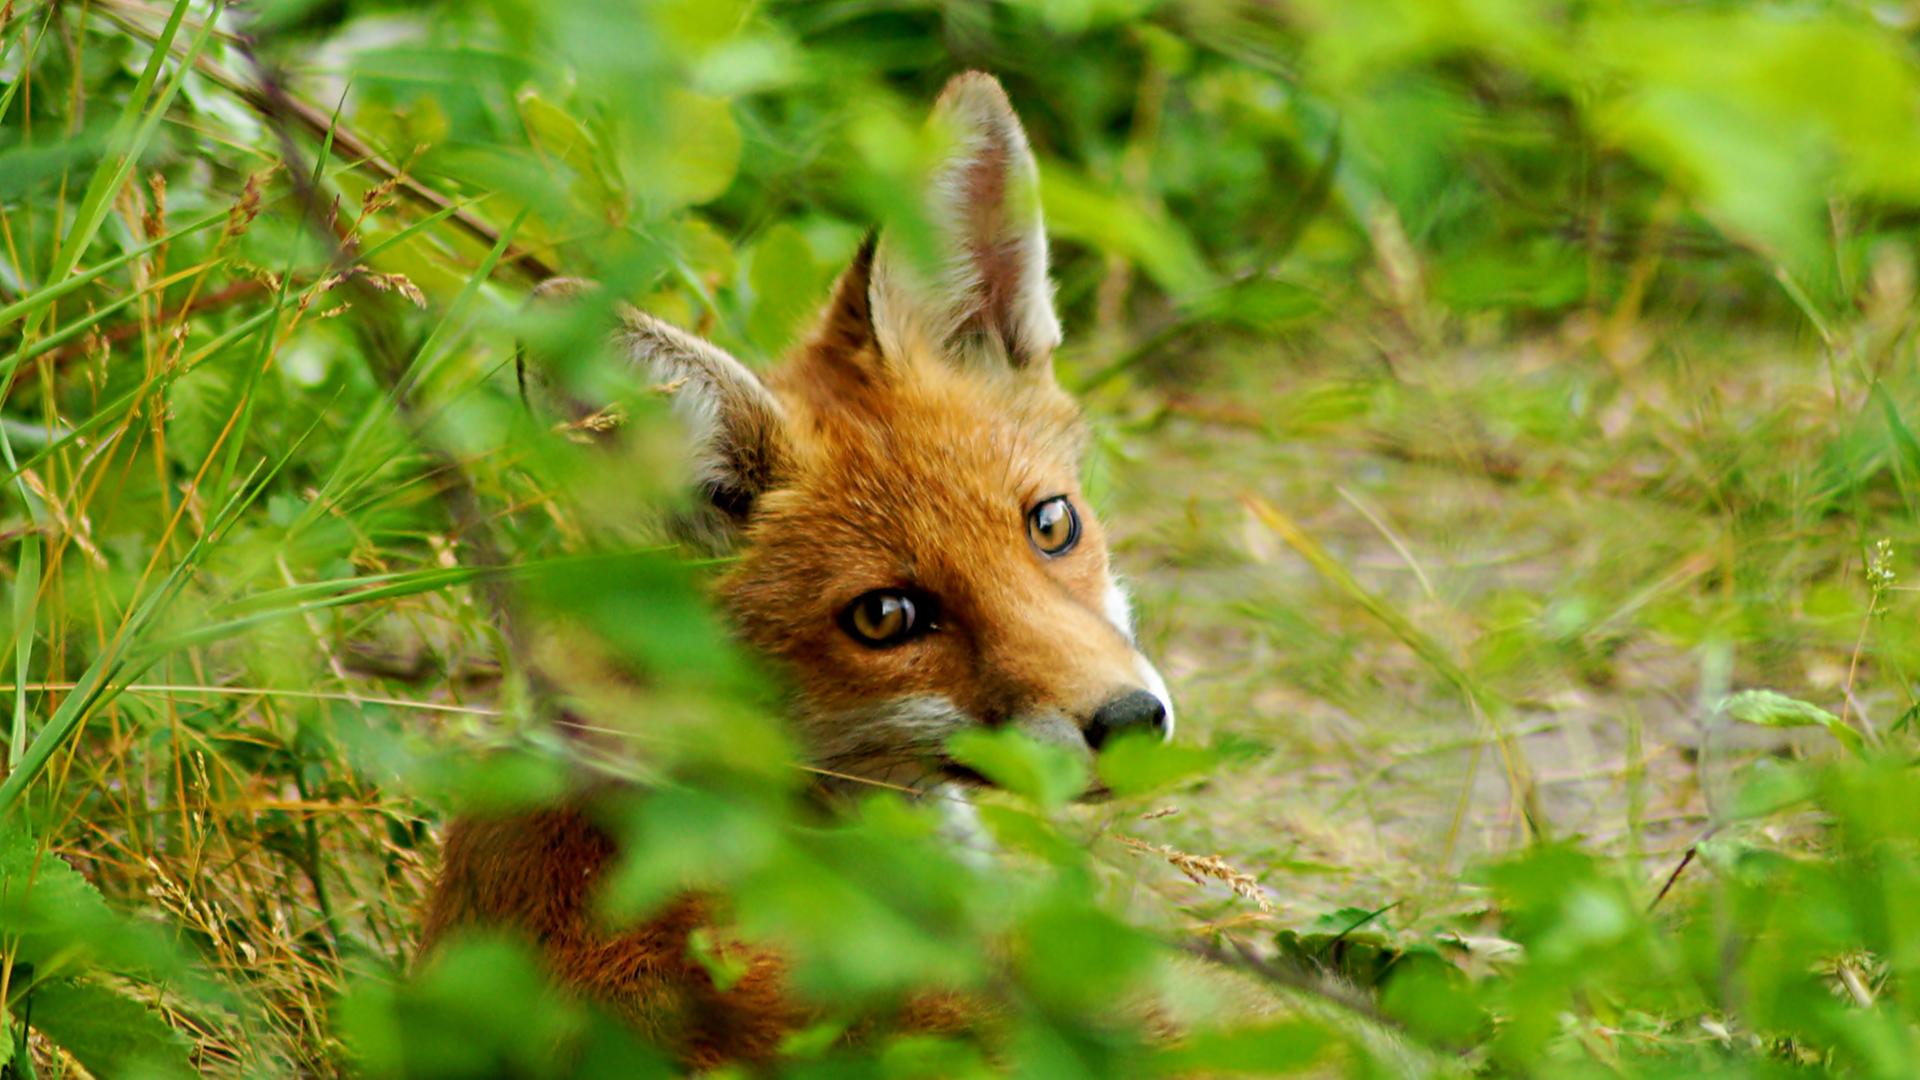 Das Hörspiel "Jagd auf Tilla Fuchs" ist aus der fantastischen Fabel "Lady into Fox" von David Garnett.